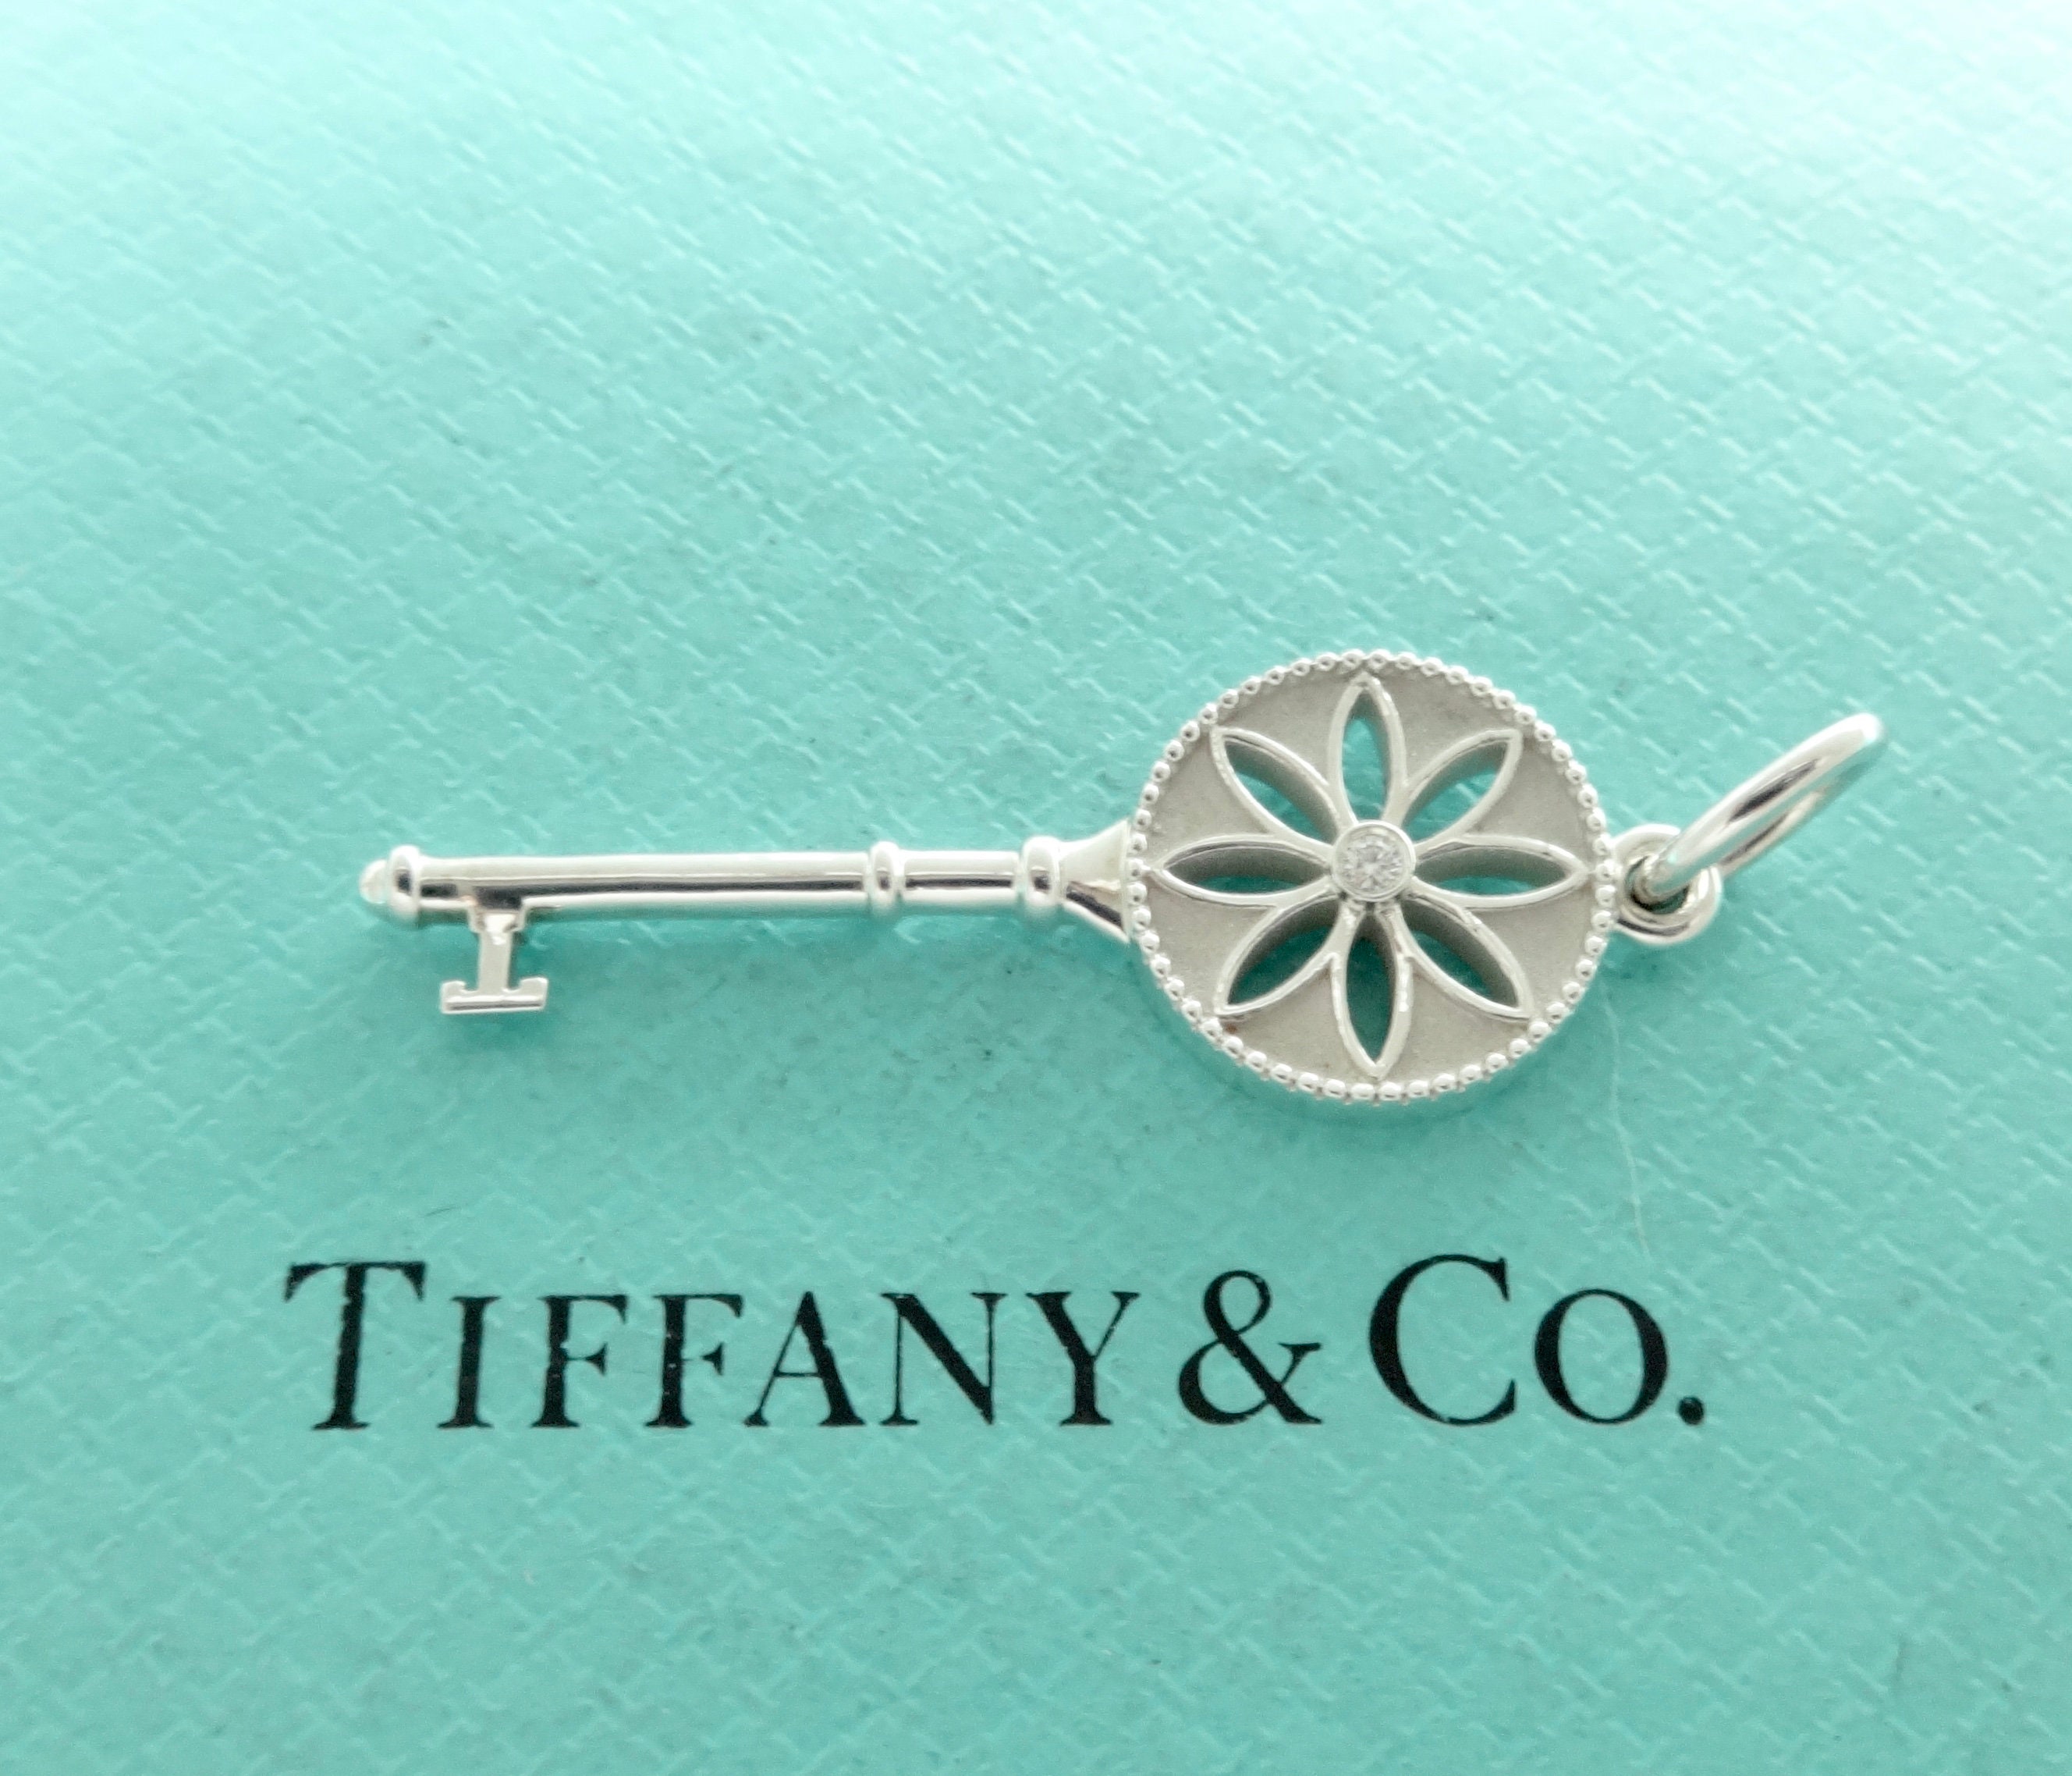 Tiffany & Co. Daisy Key Pendant Necklace